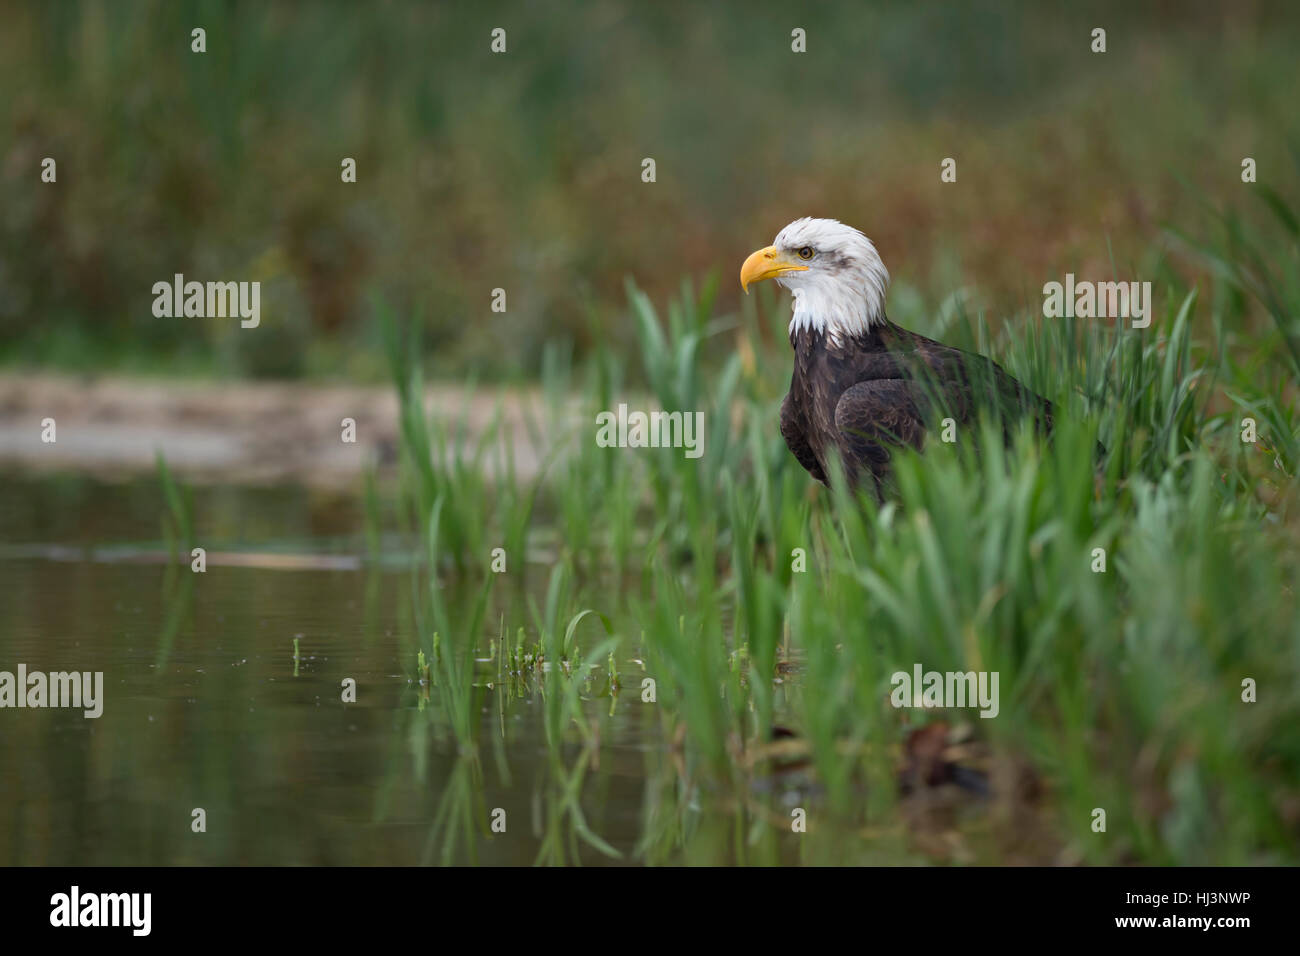 Weißkopf-Seeadler (Haliaeetus Leucocephalus), Erwachsene, sitzen auf dem Boden versteckt im Schilf Rasen am Ufer eines Sees, Jagd. Stockfoto